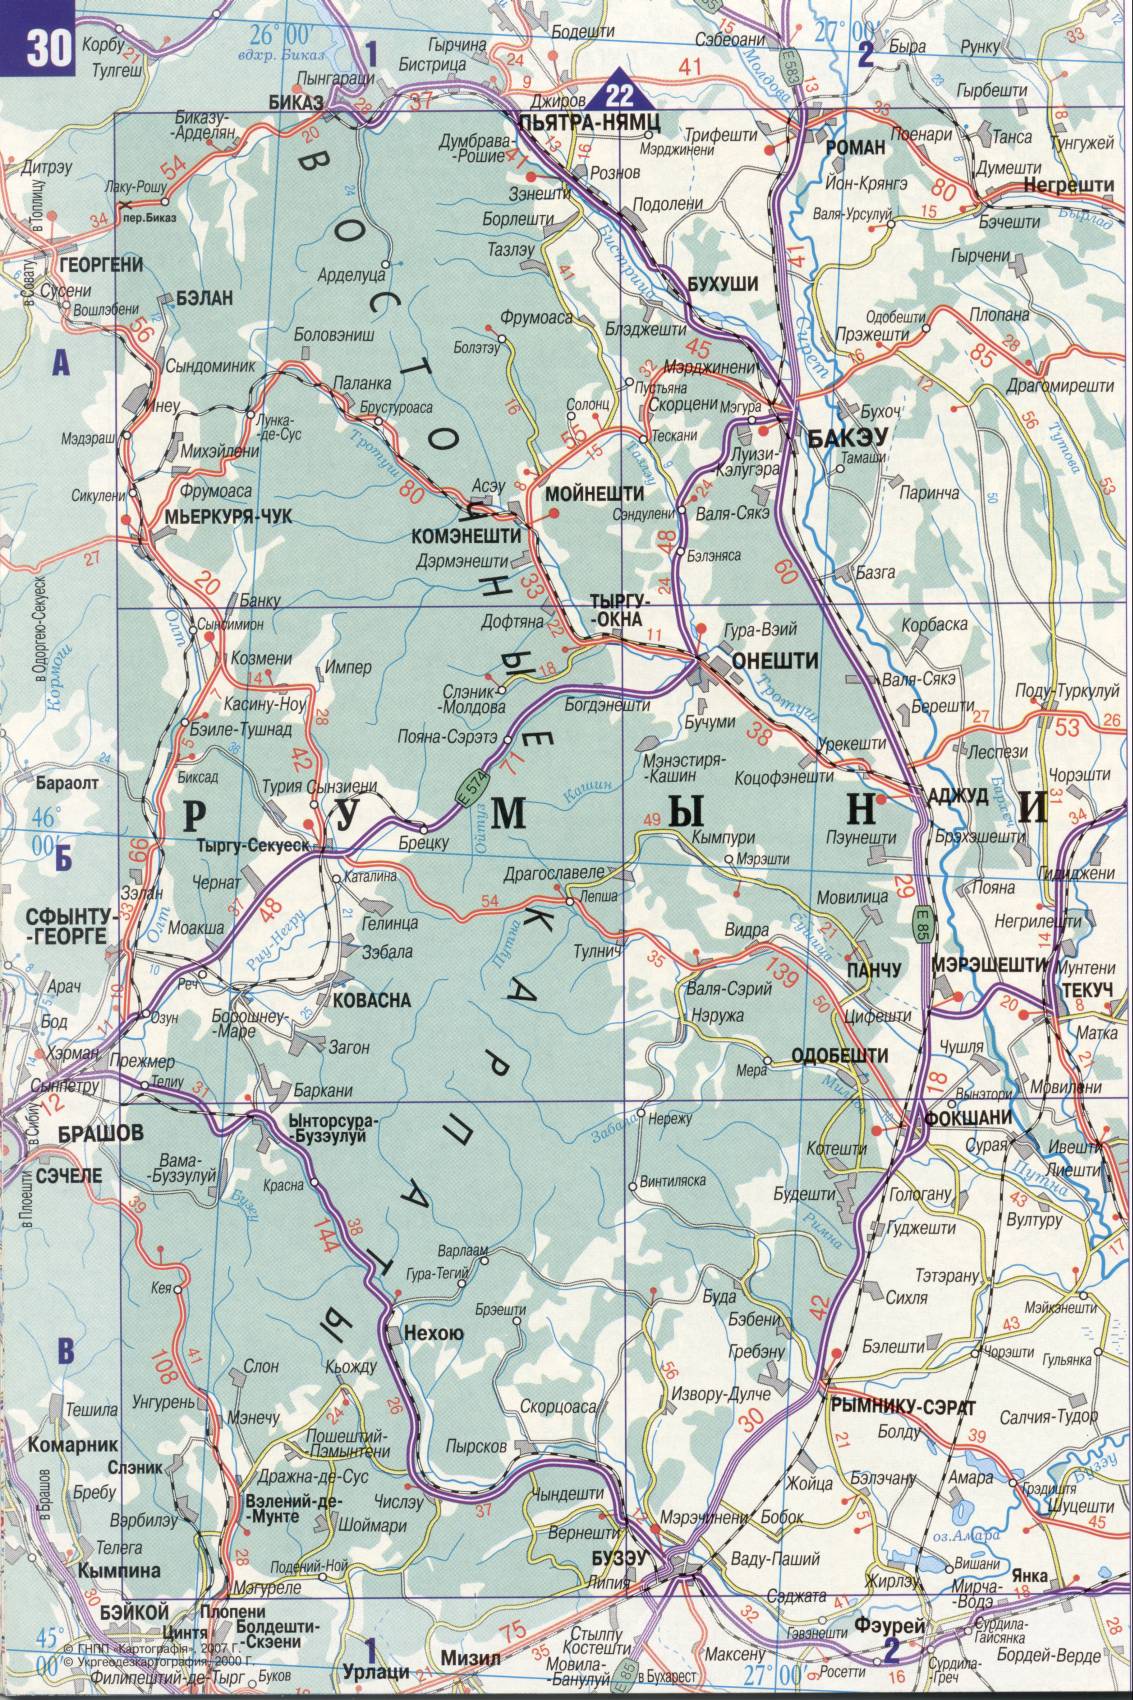 Karte der Ukraine. Detaillierte Straßenkarte der Ukraine avtomobilnog Satin. kostenlos herunterladen, C3